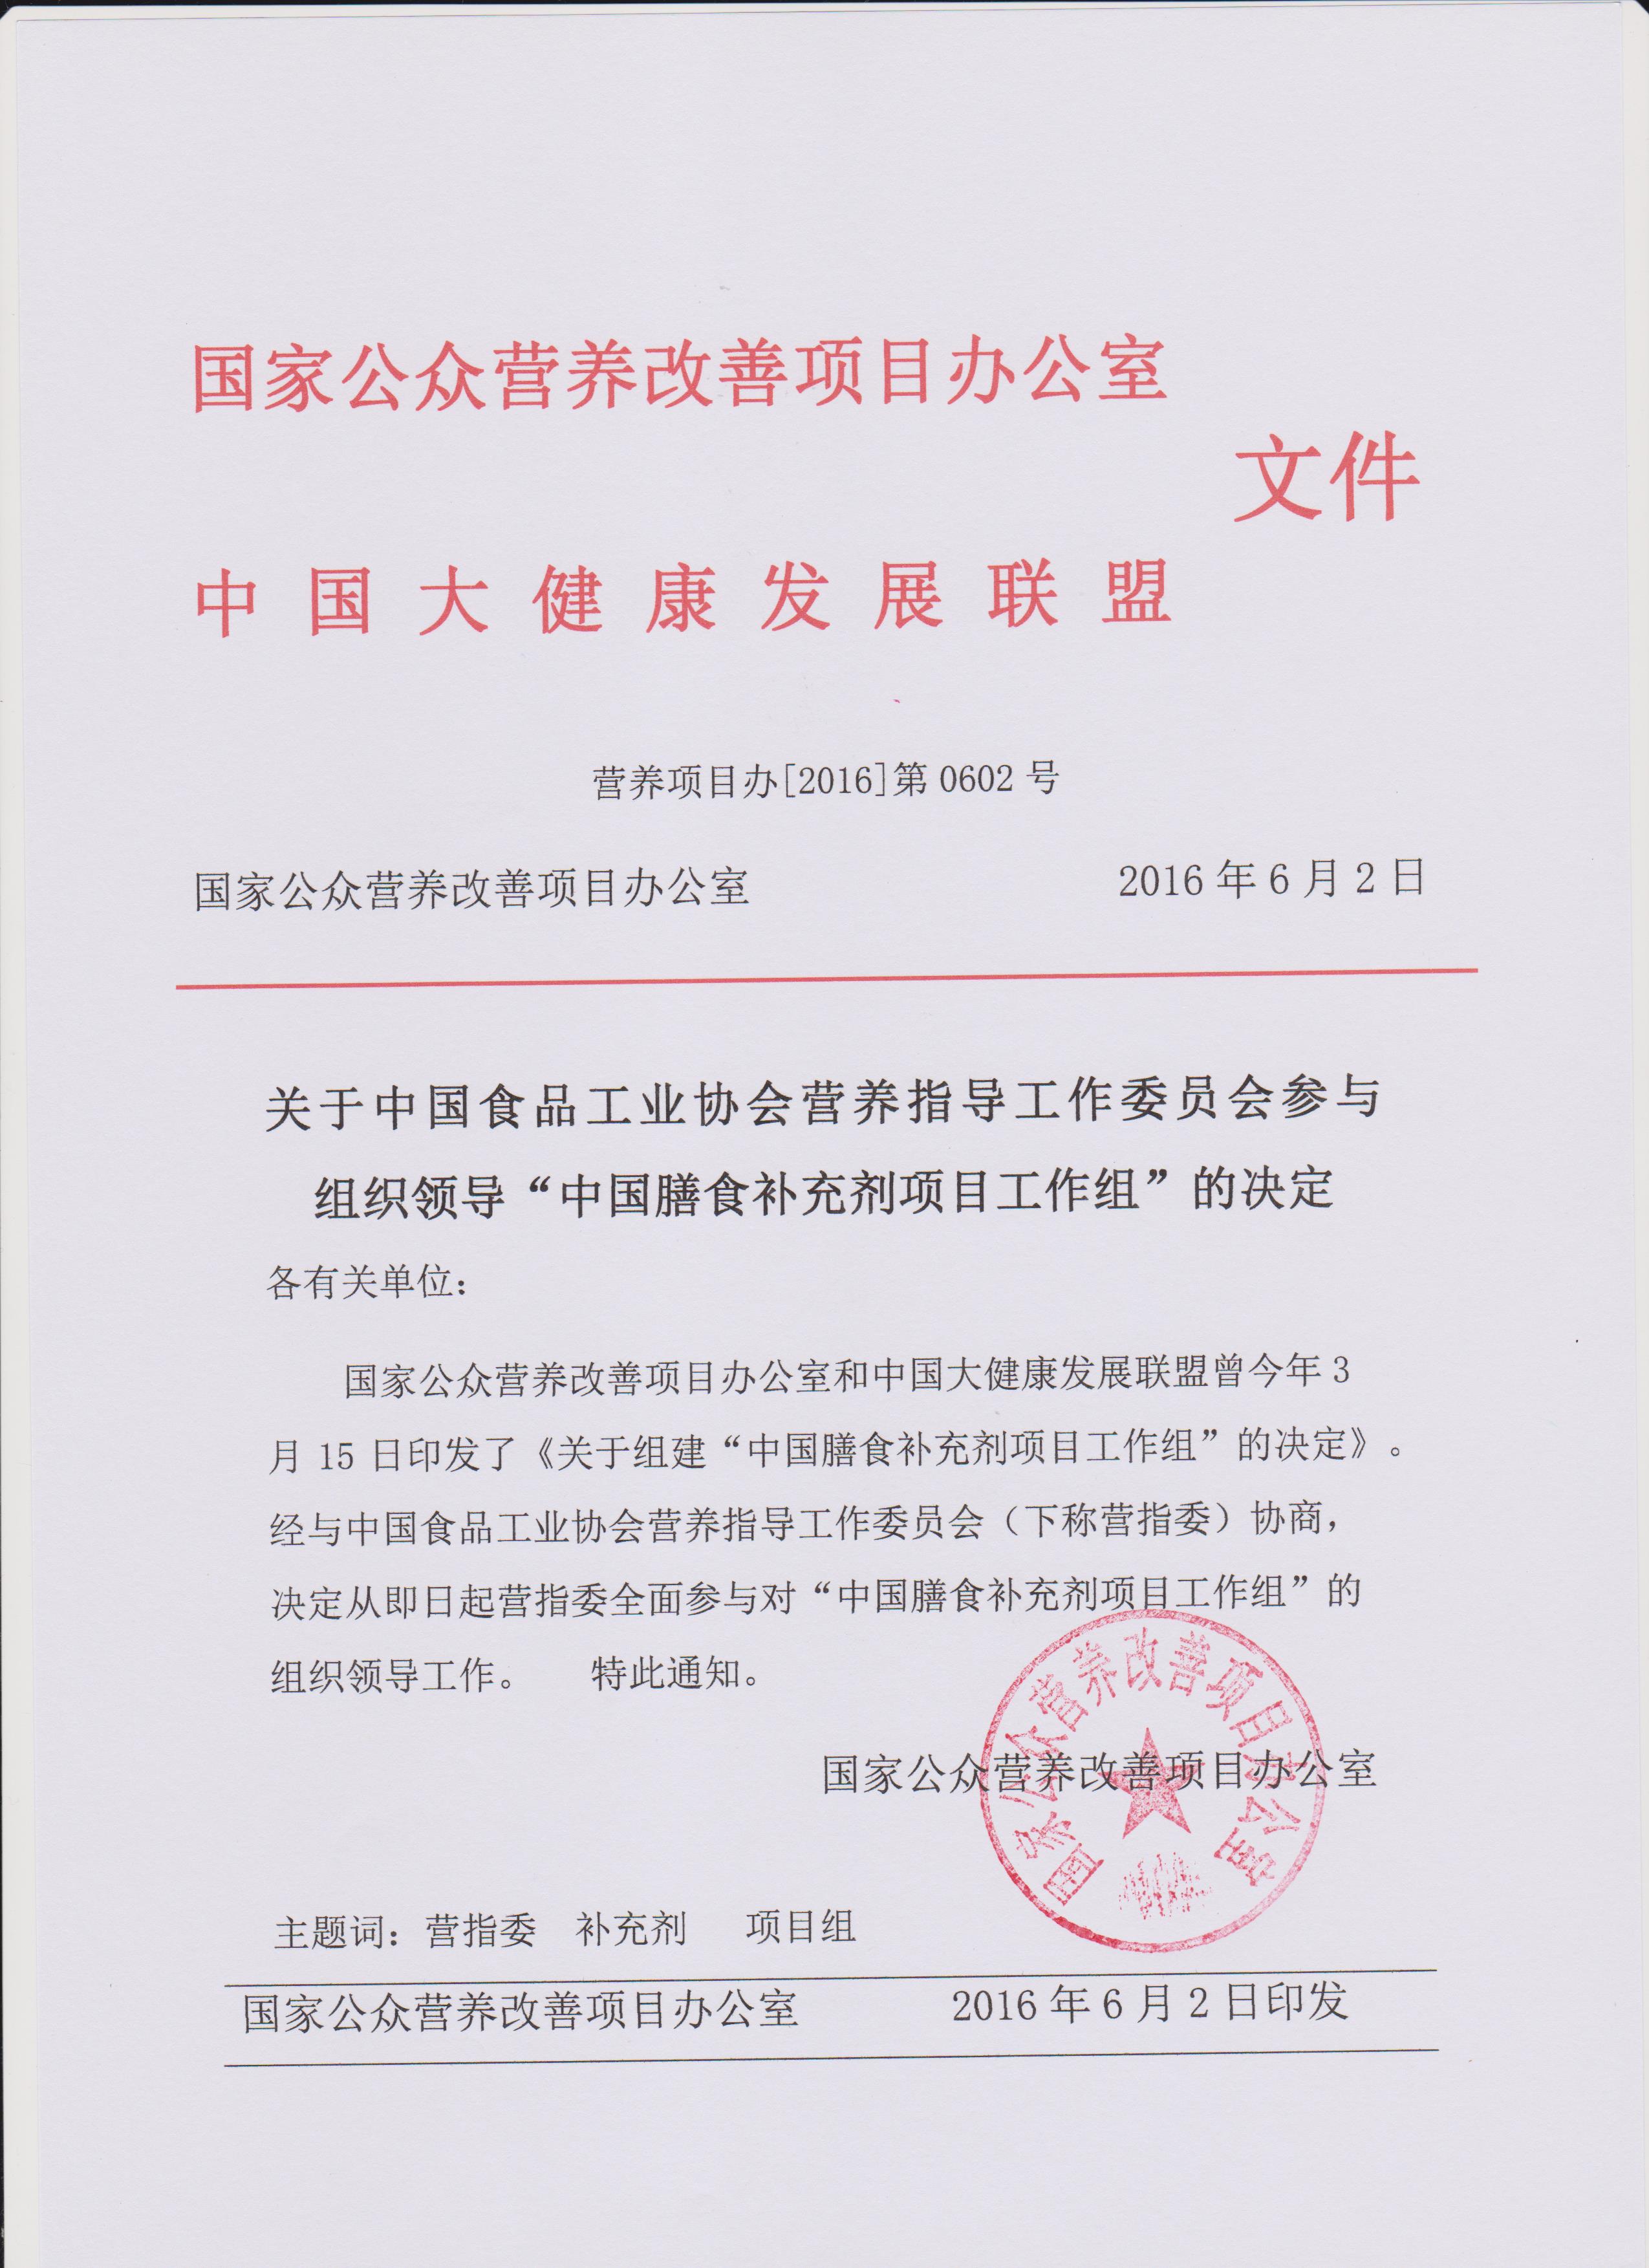 关于中国食品工业协会营养指导工作委员会参与组织领导“中国膳食补充剂项目工作组”的决定